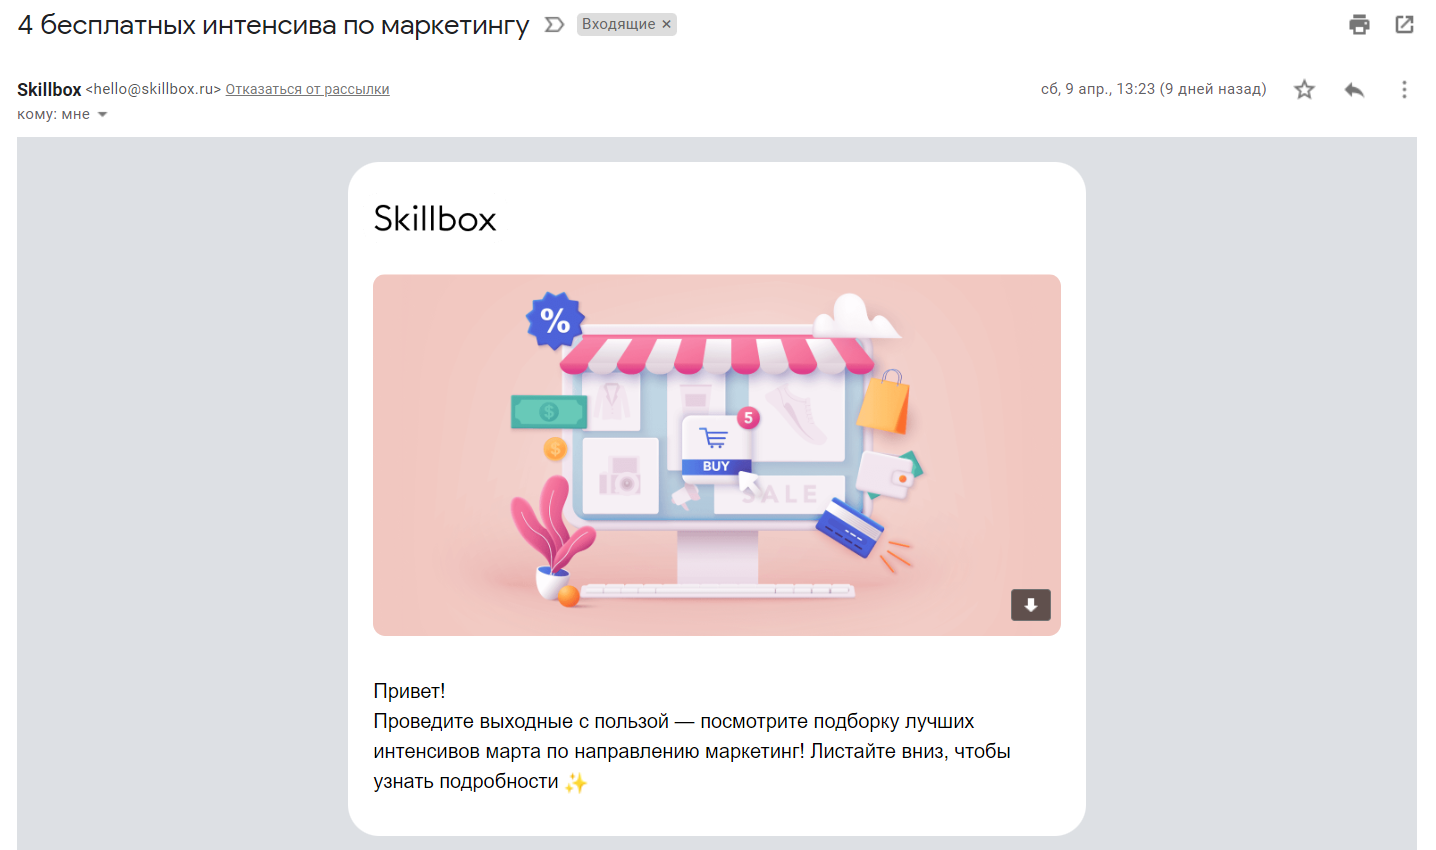 Skillbox присылает материалы по маркетингу, потому что подписчик интересовался курсами этой категории